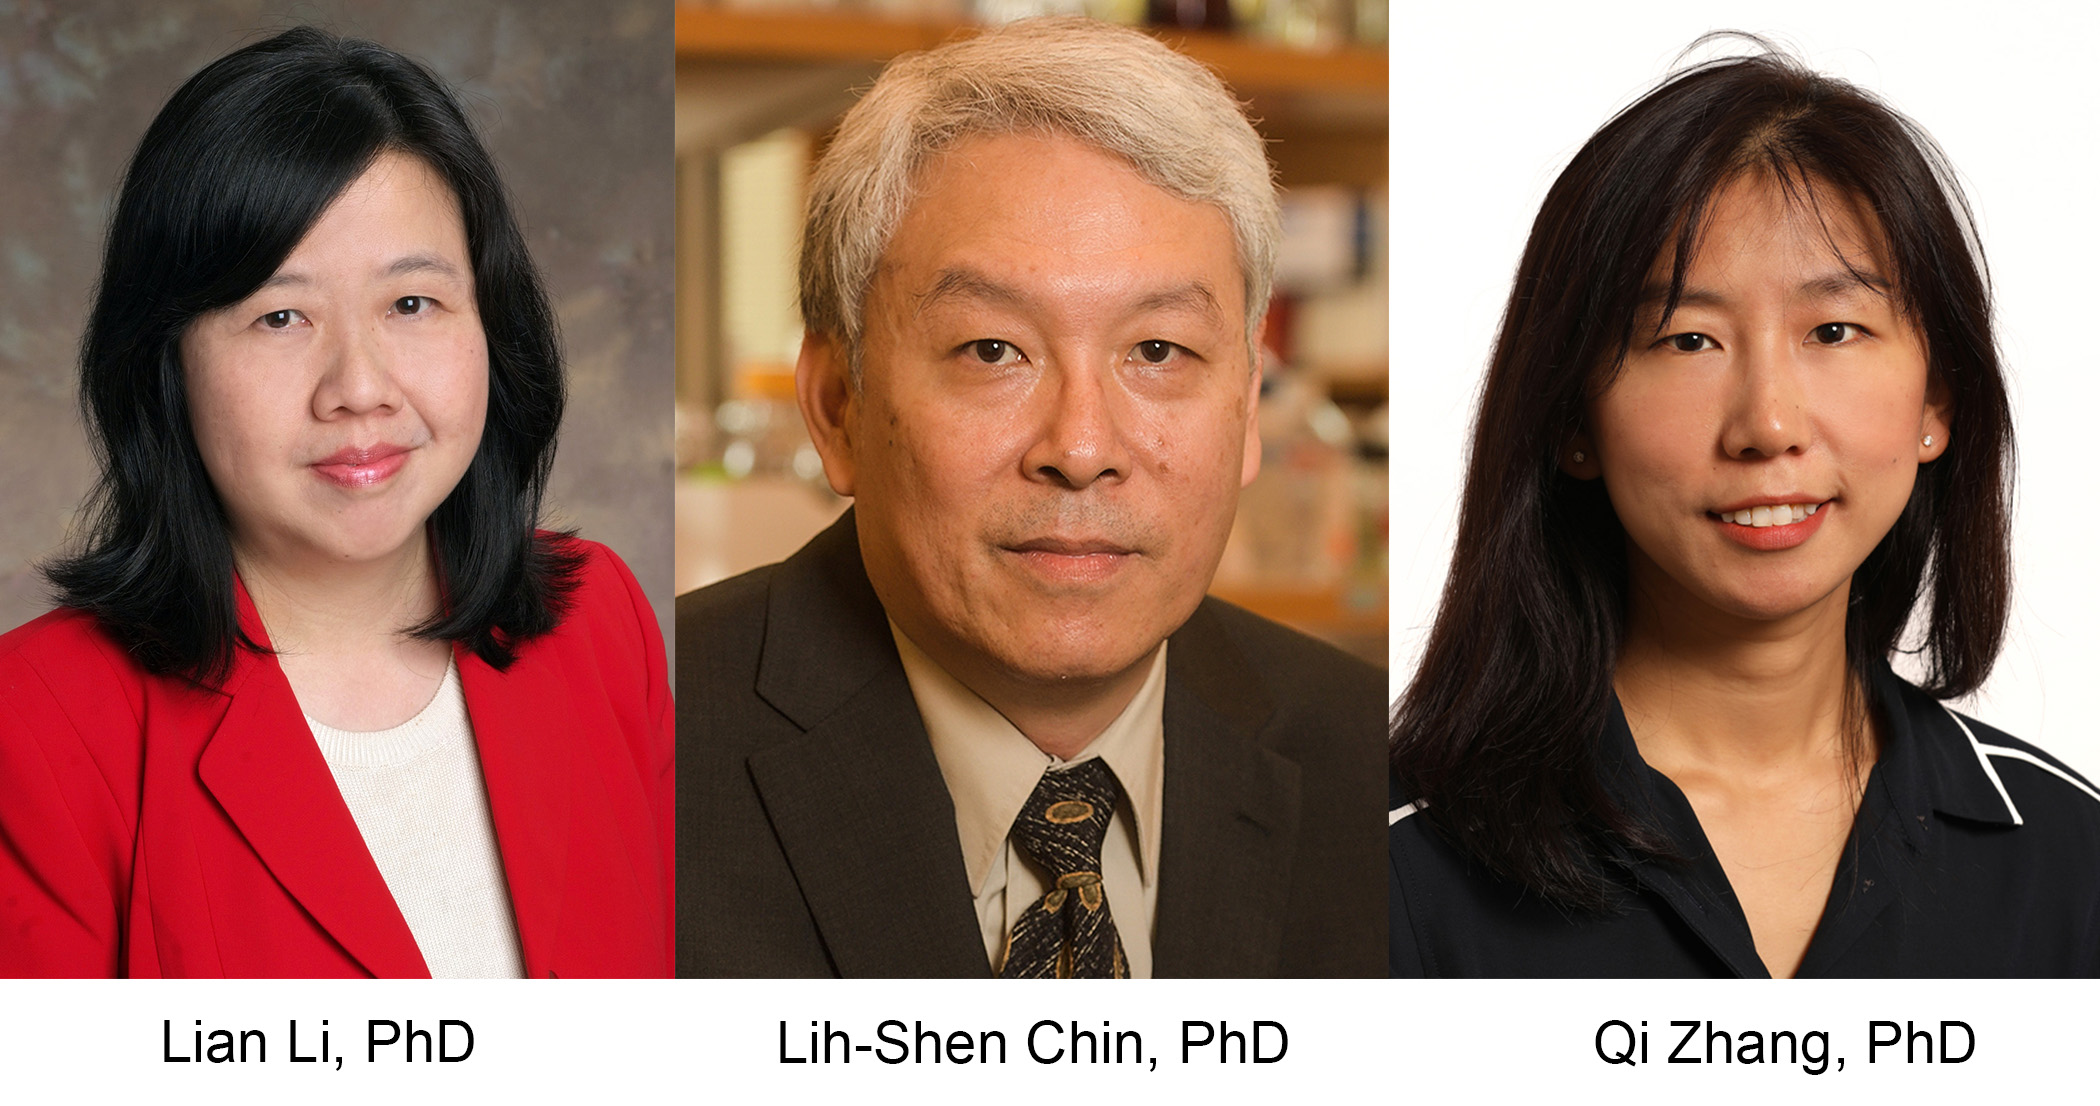 Drs. Li, Chin, Zhang